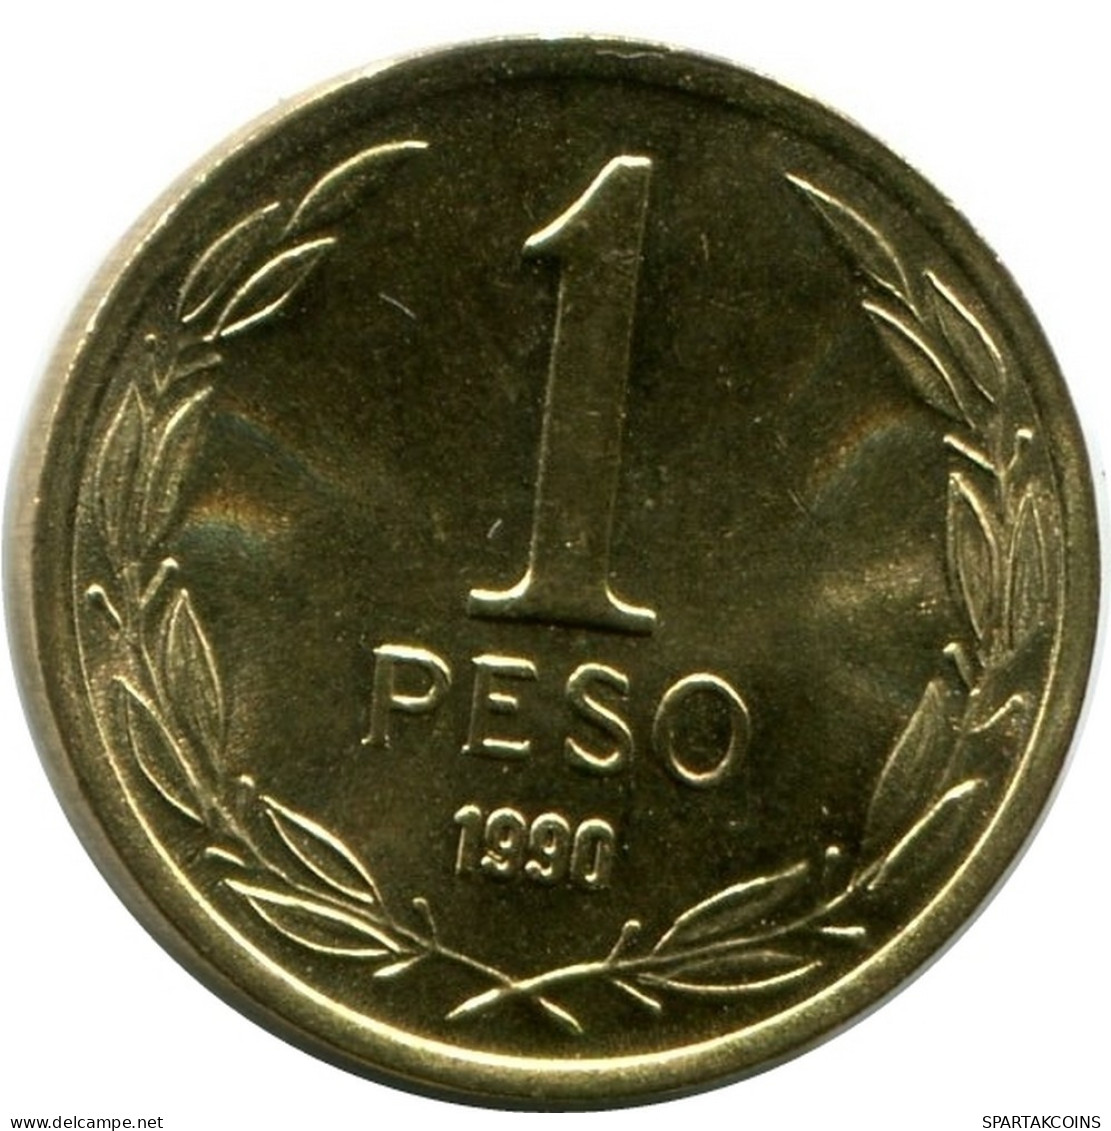 1 PESO 1990 CHILE UNC Münze #M10071.D.A - Chile